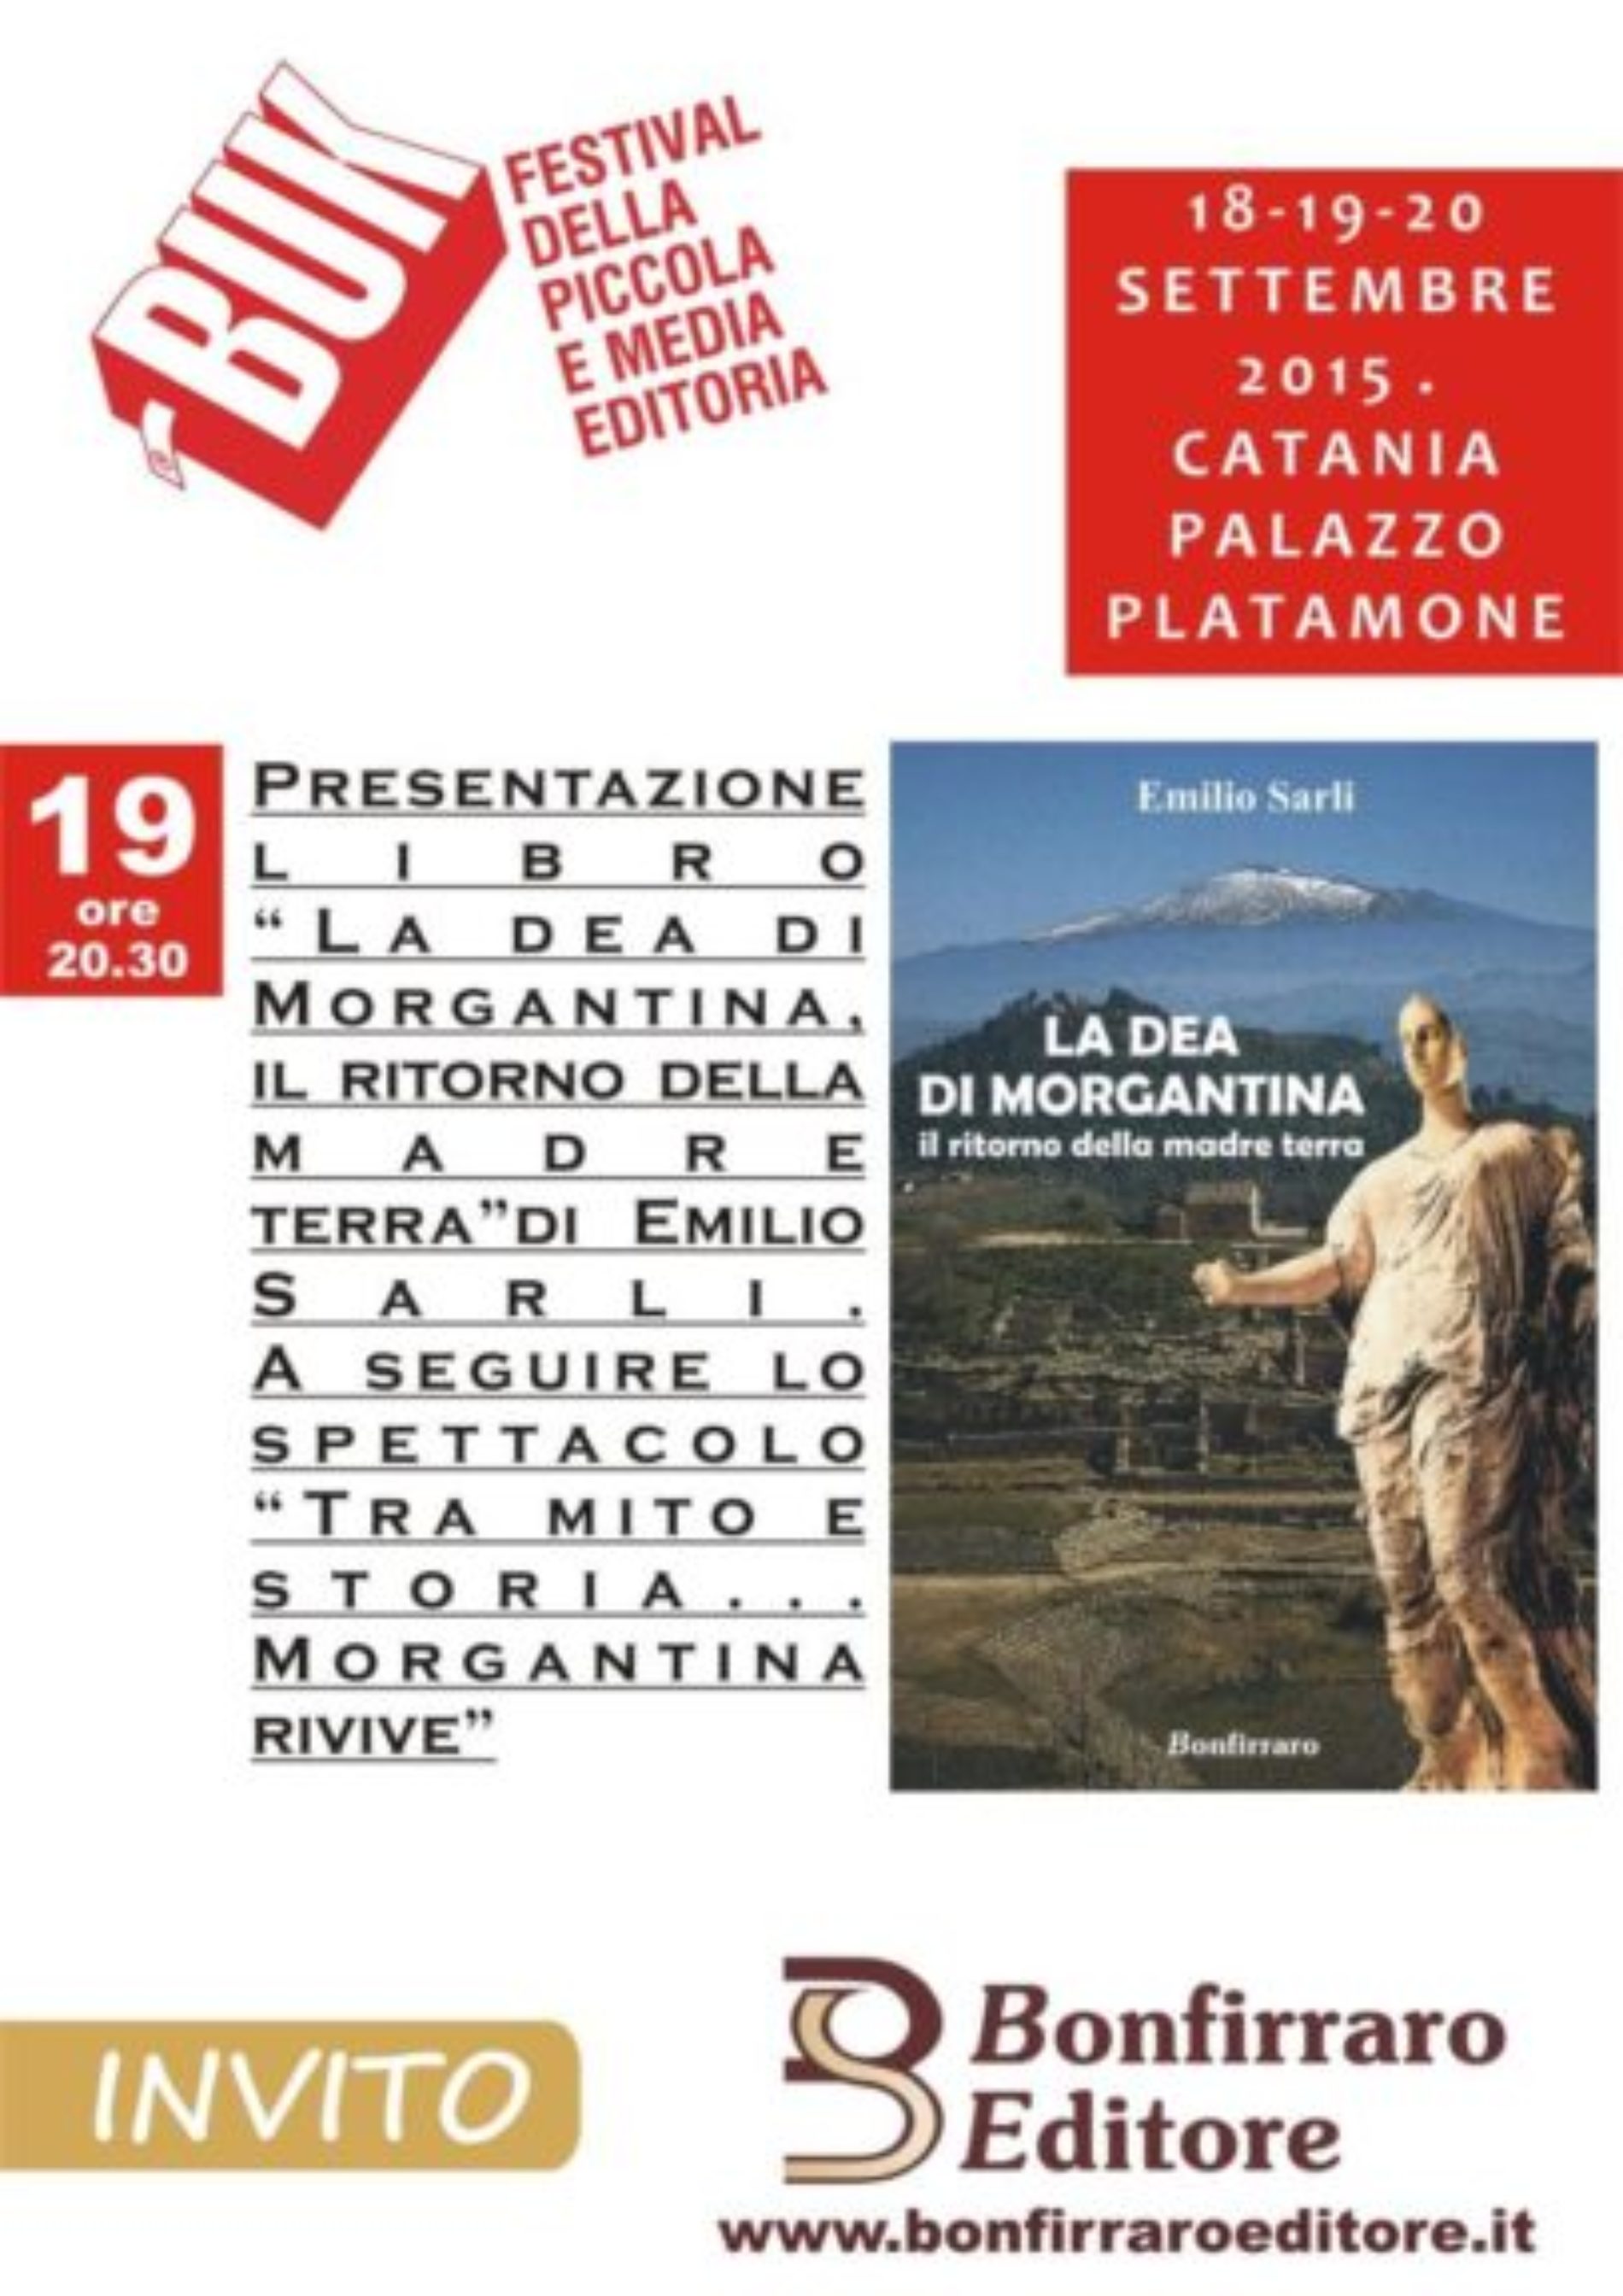 Bonfirraro editore è protagonista alla seconda edizione del Buk Festival – A Catania, Palazzo Platamone (Palazzo della Cultura), dal 18 al 20 settembre